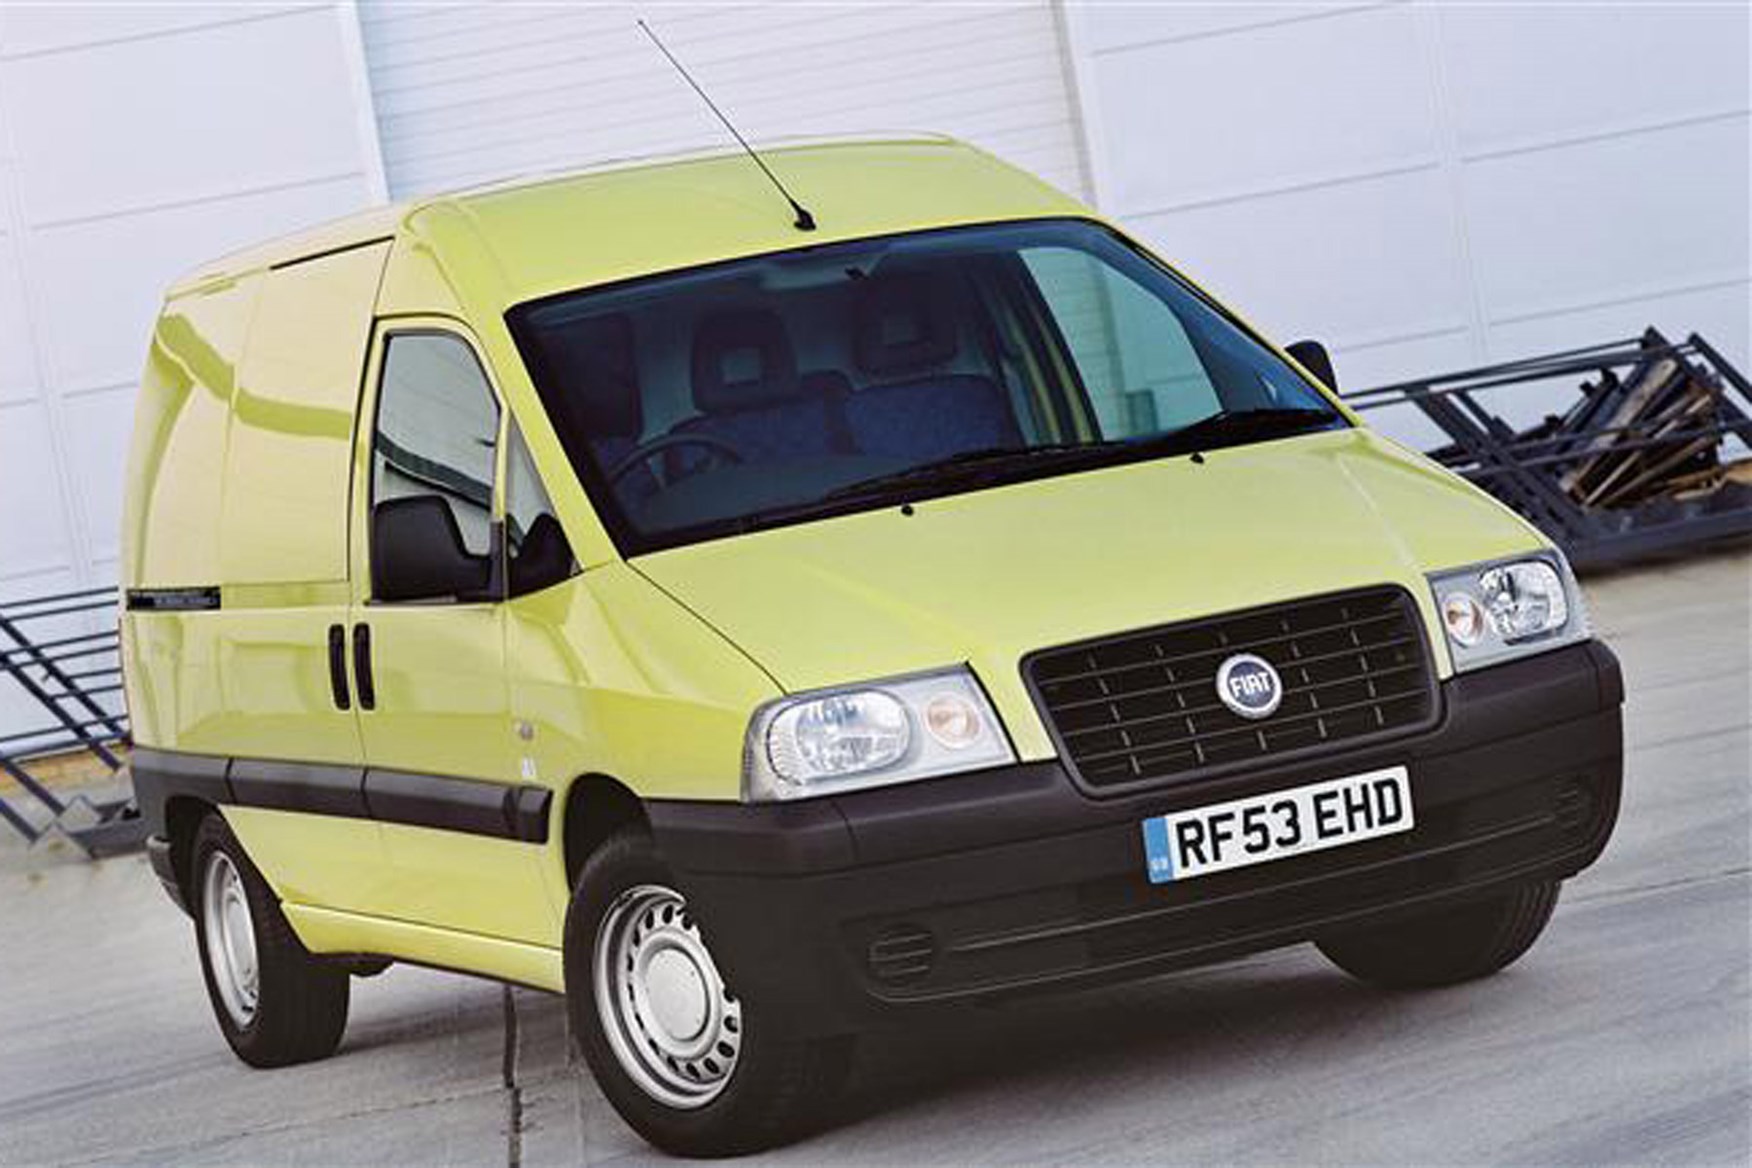 Fiat Scudo review on Parkers Vans - exterior